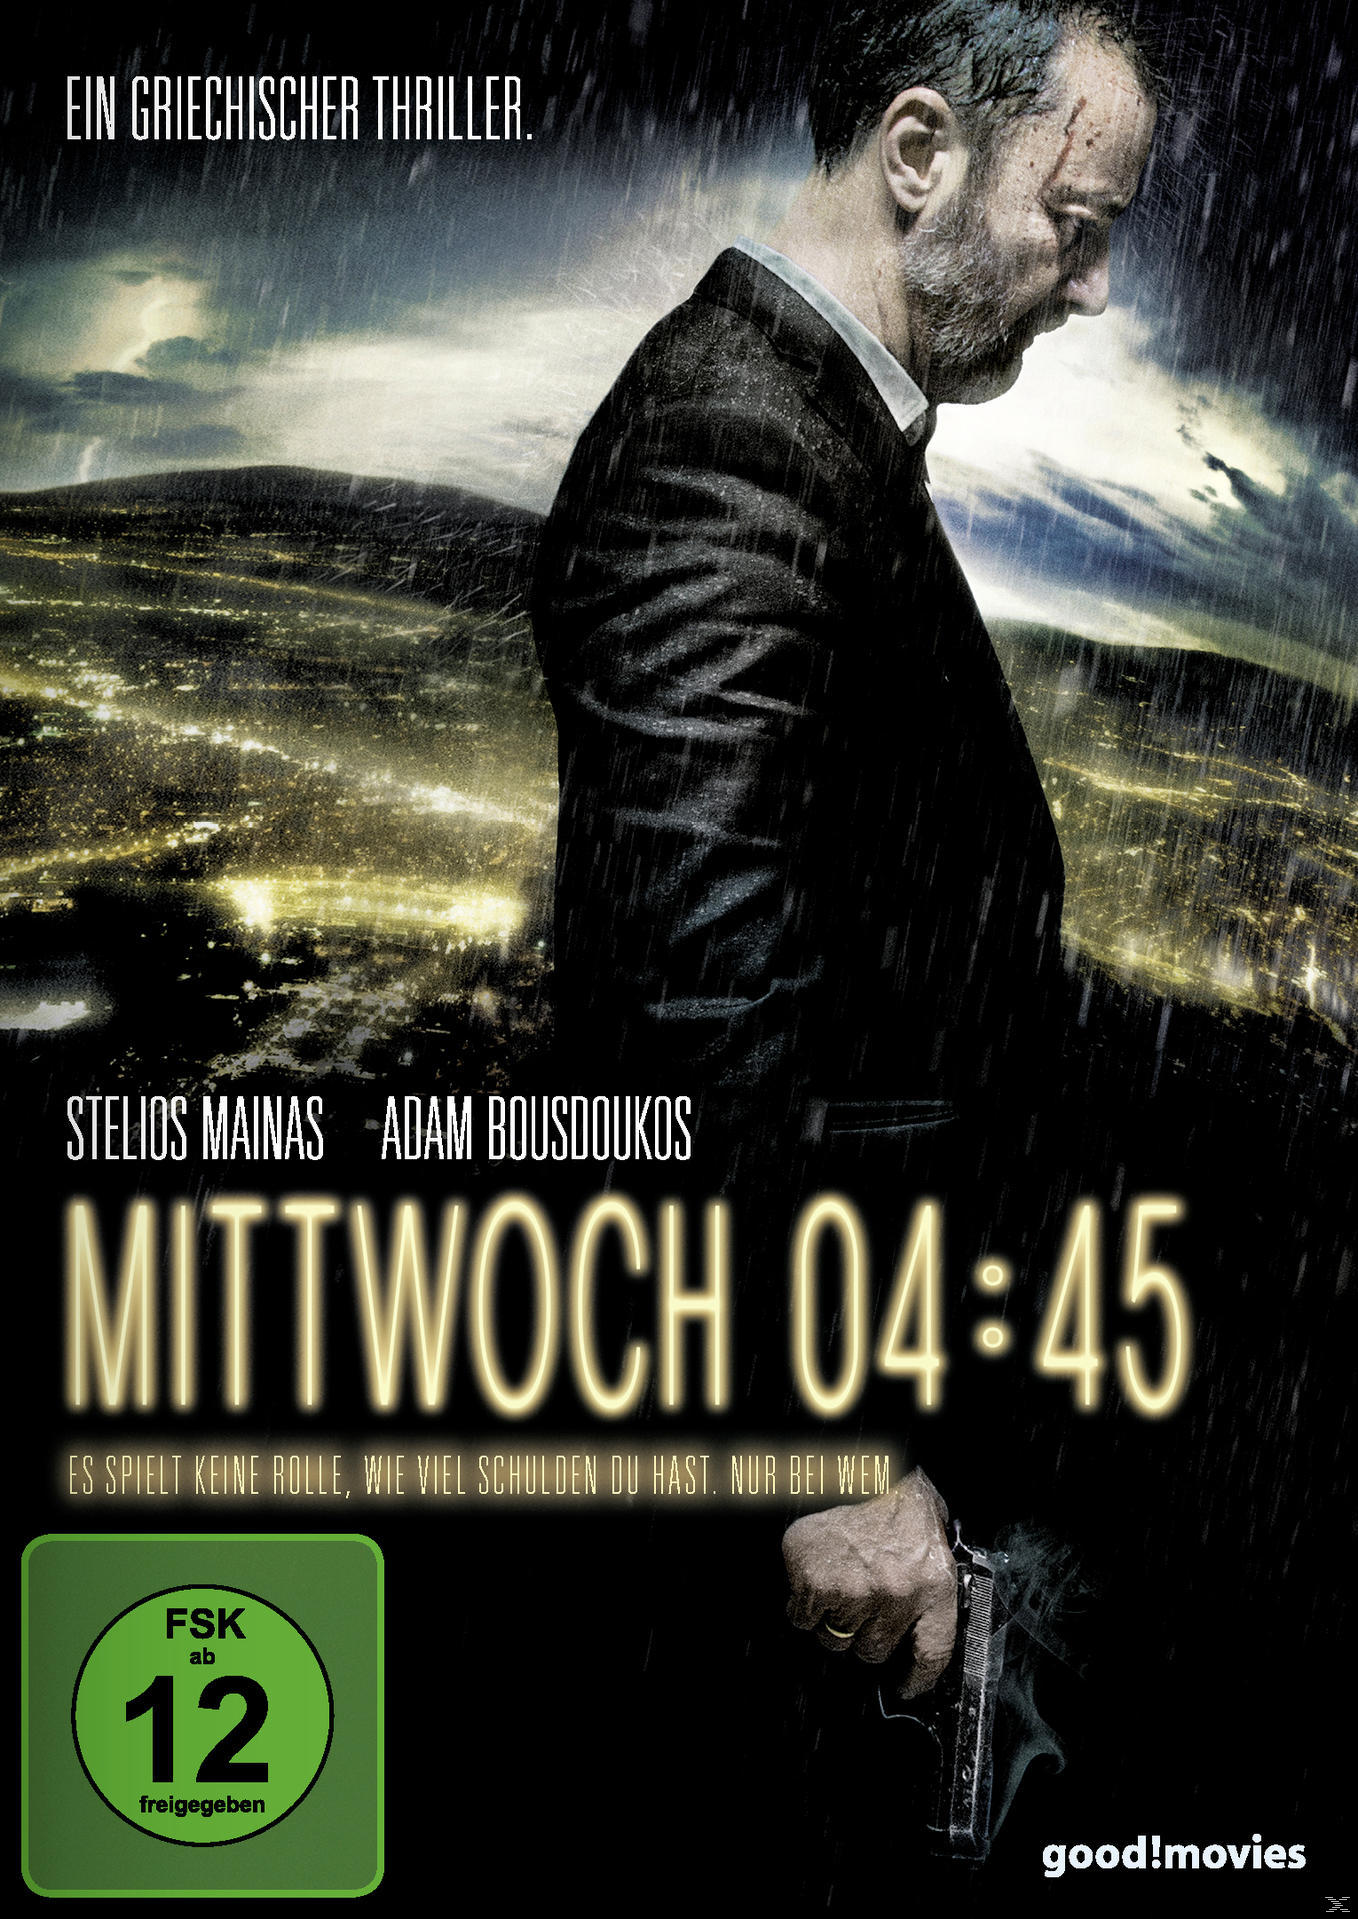 DVD 04:45 Mittwoch